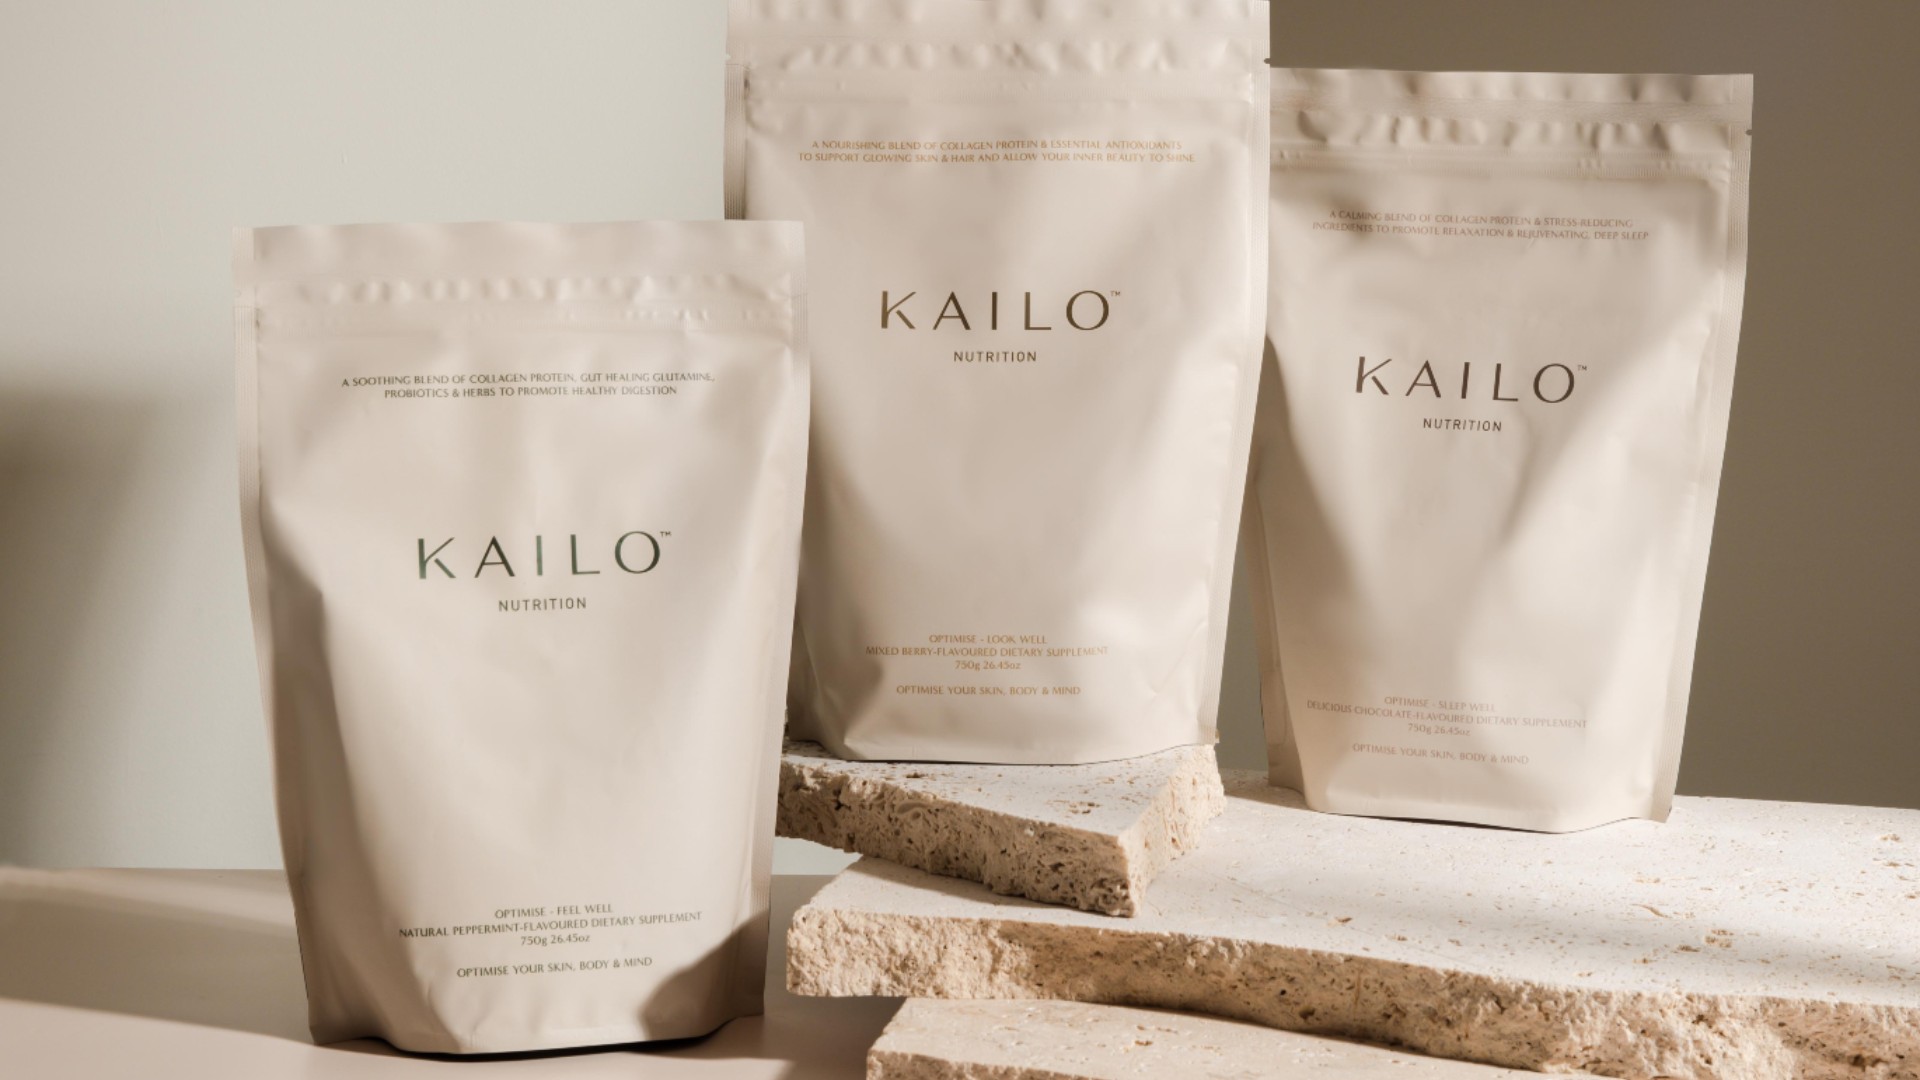 Kailo nutrition